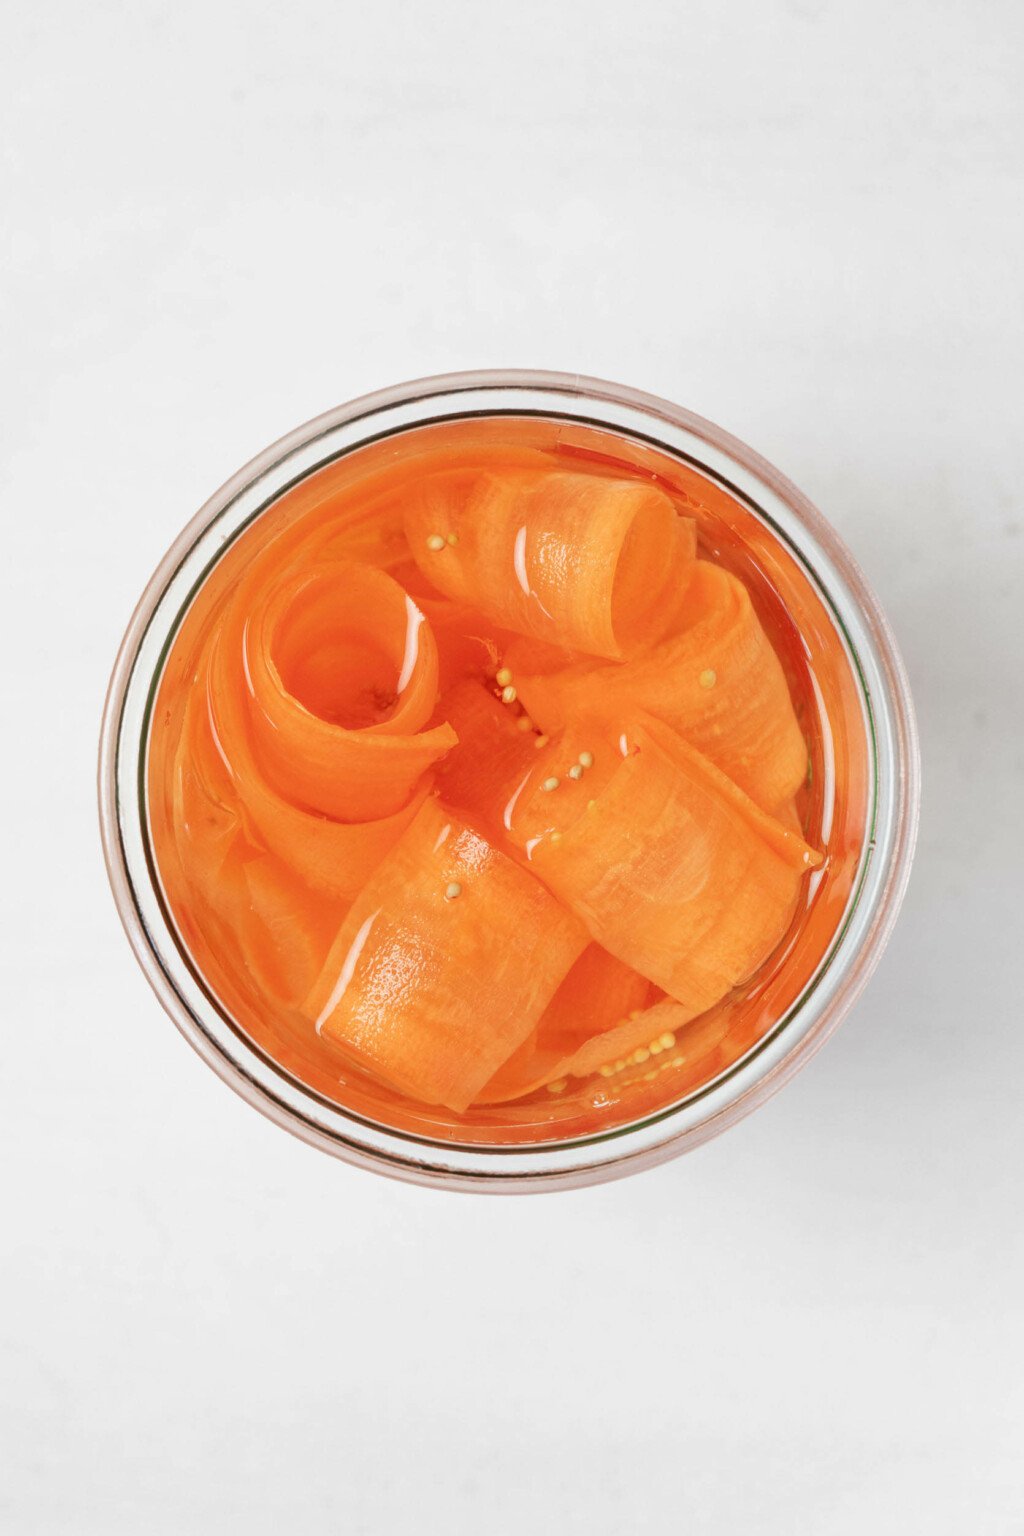 Μια εικόνα από πάνω από ένα γυάλινο βάζο που περιέχει κορδέλες καρότου τουρσί.  Ακουμπά σε λευκή επιφάνεια.